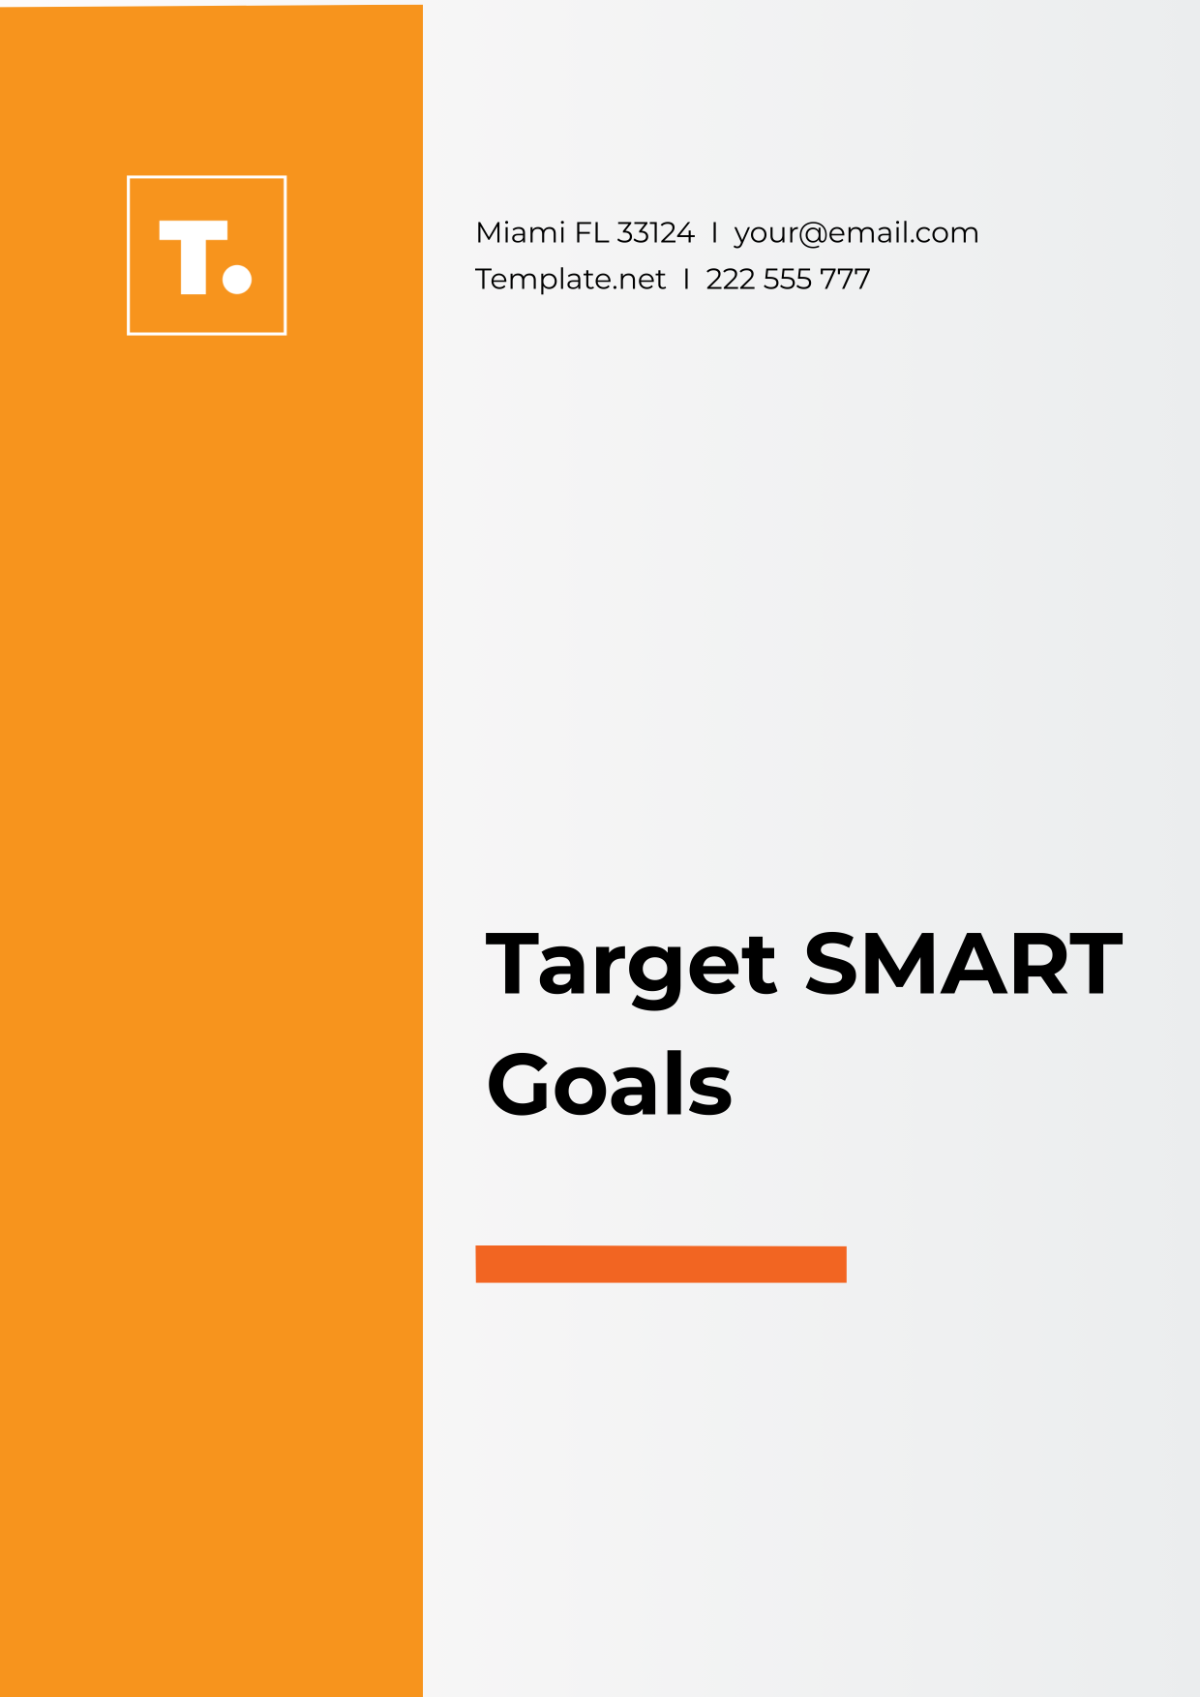 Target SMART Goals Template